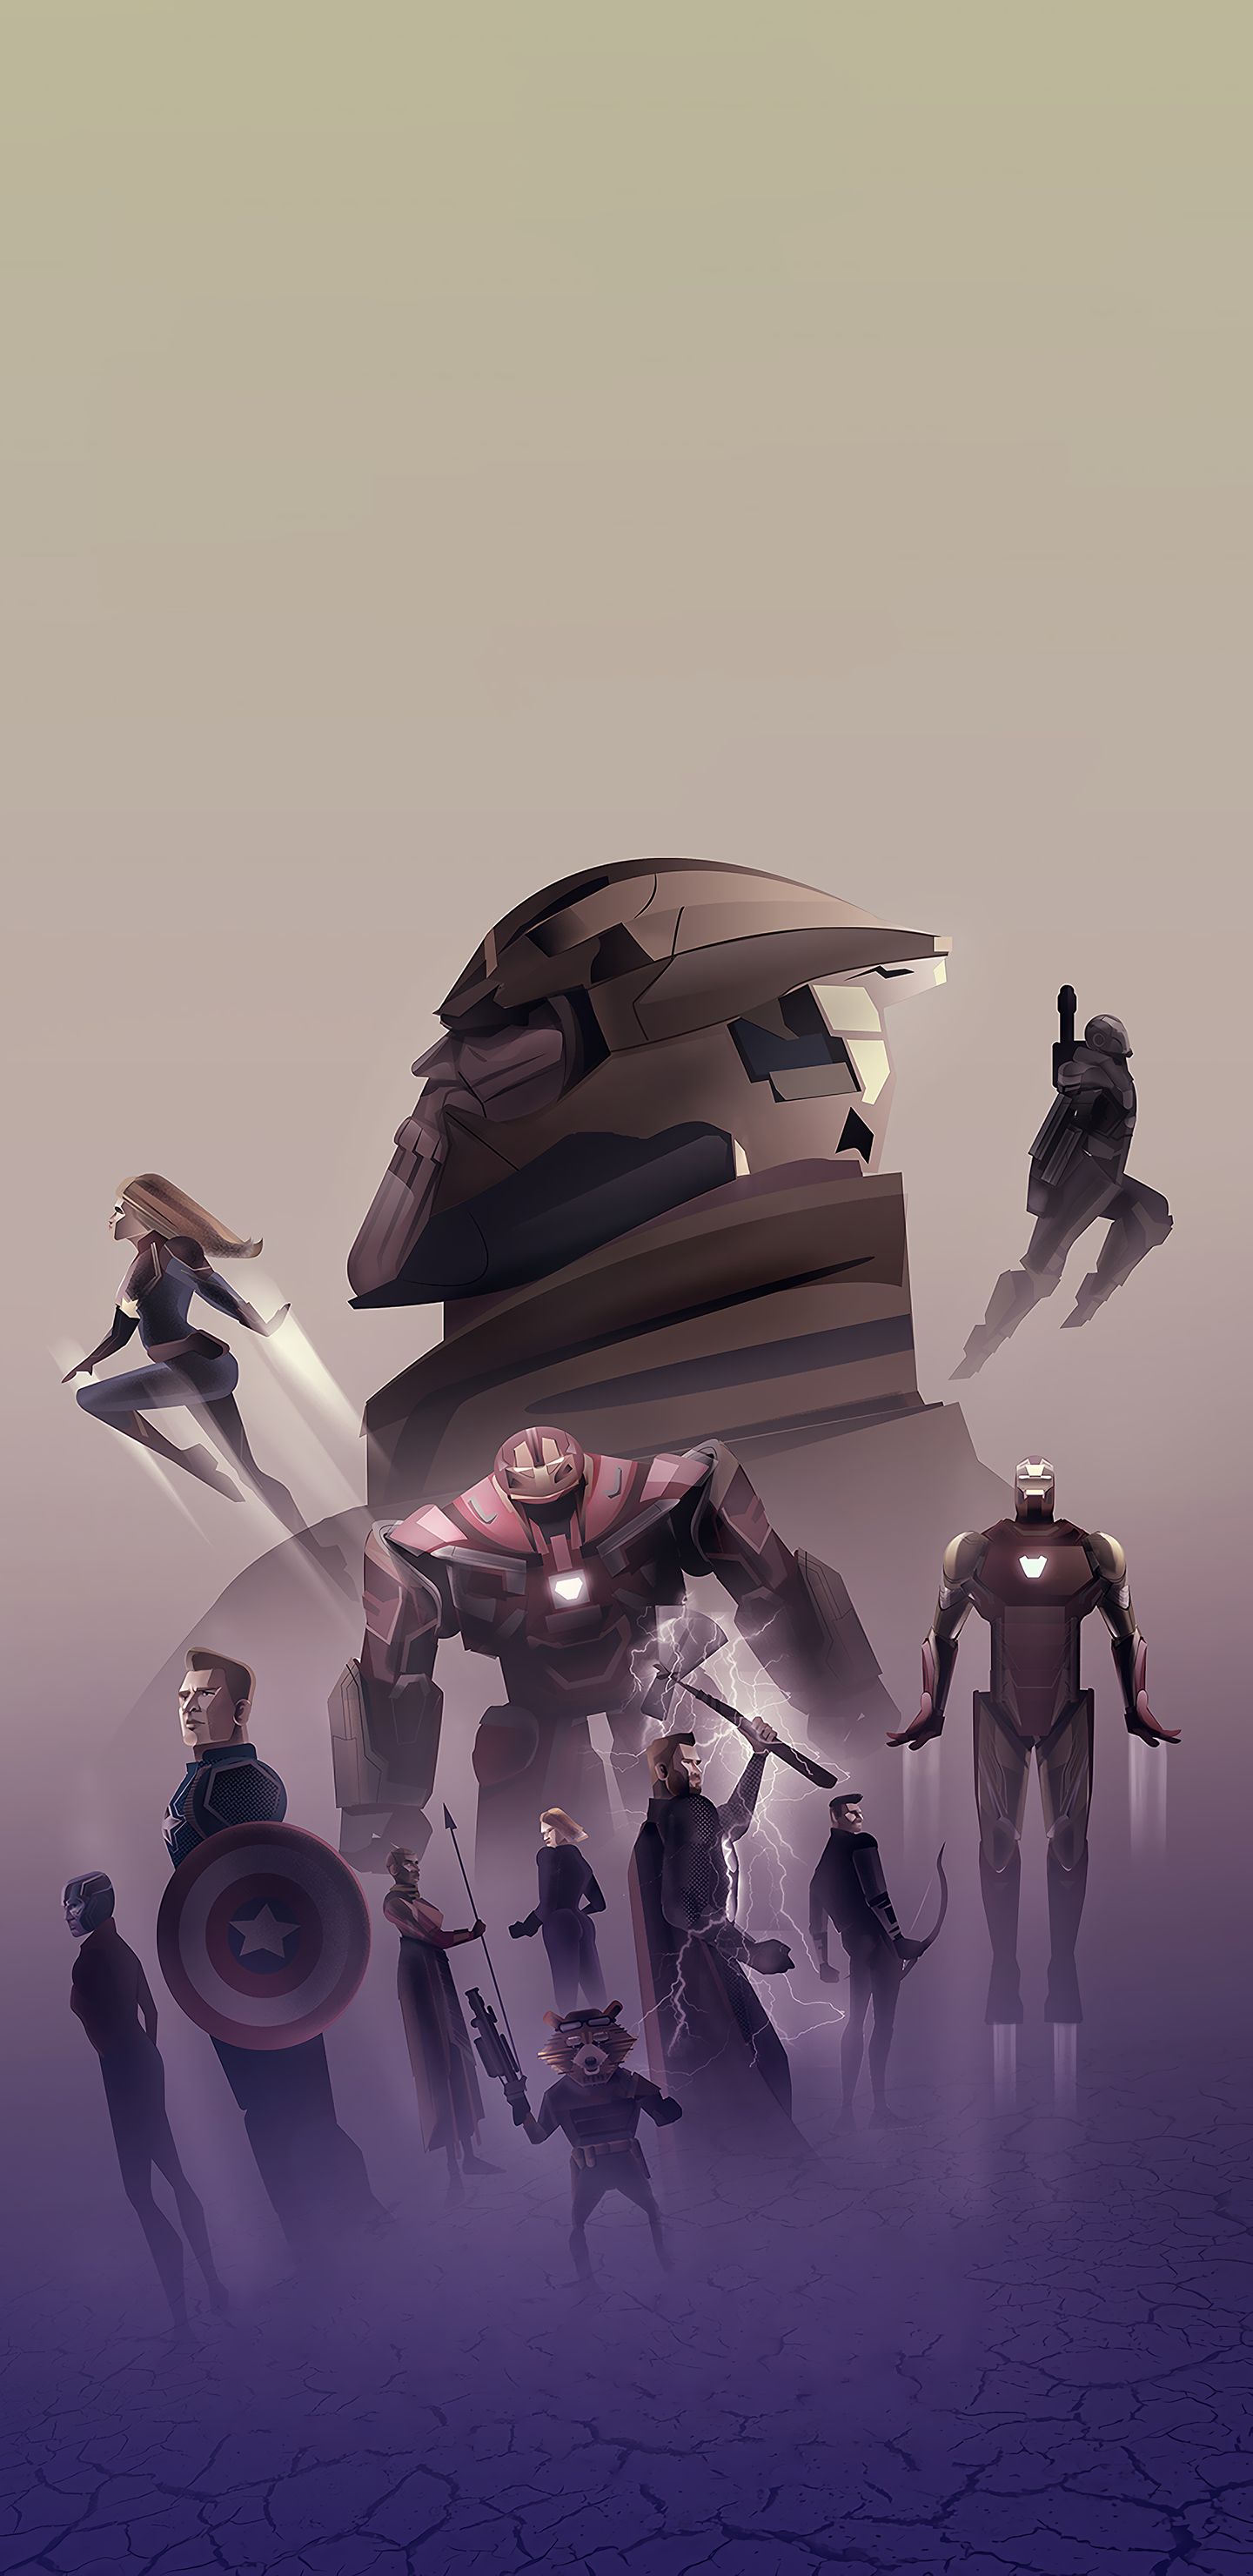 Avengers Endgame Cool New Art Wallpapers